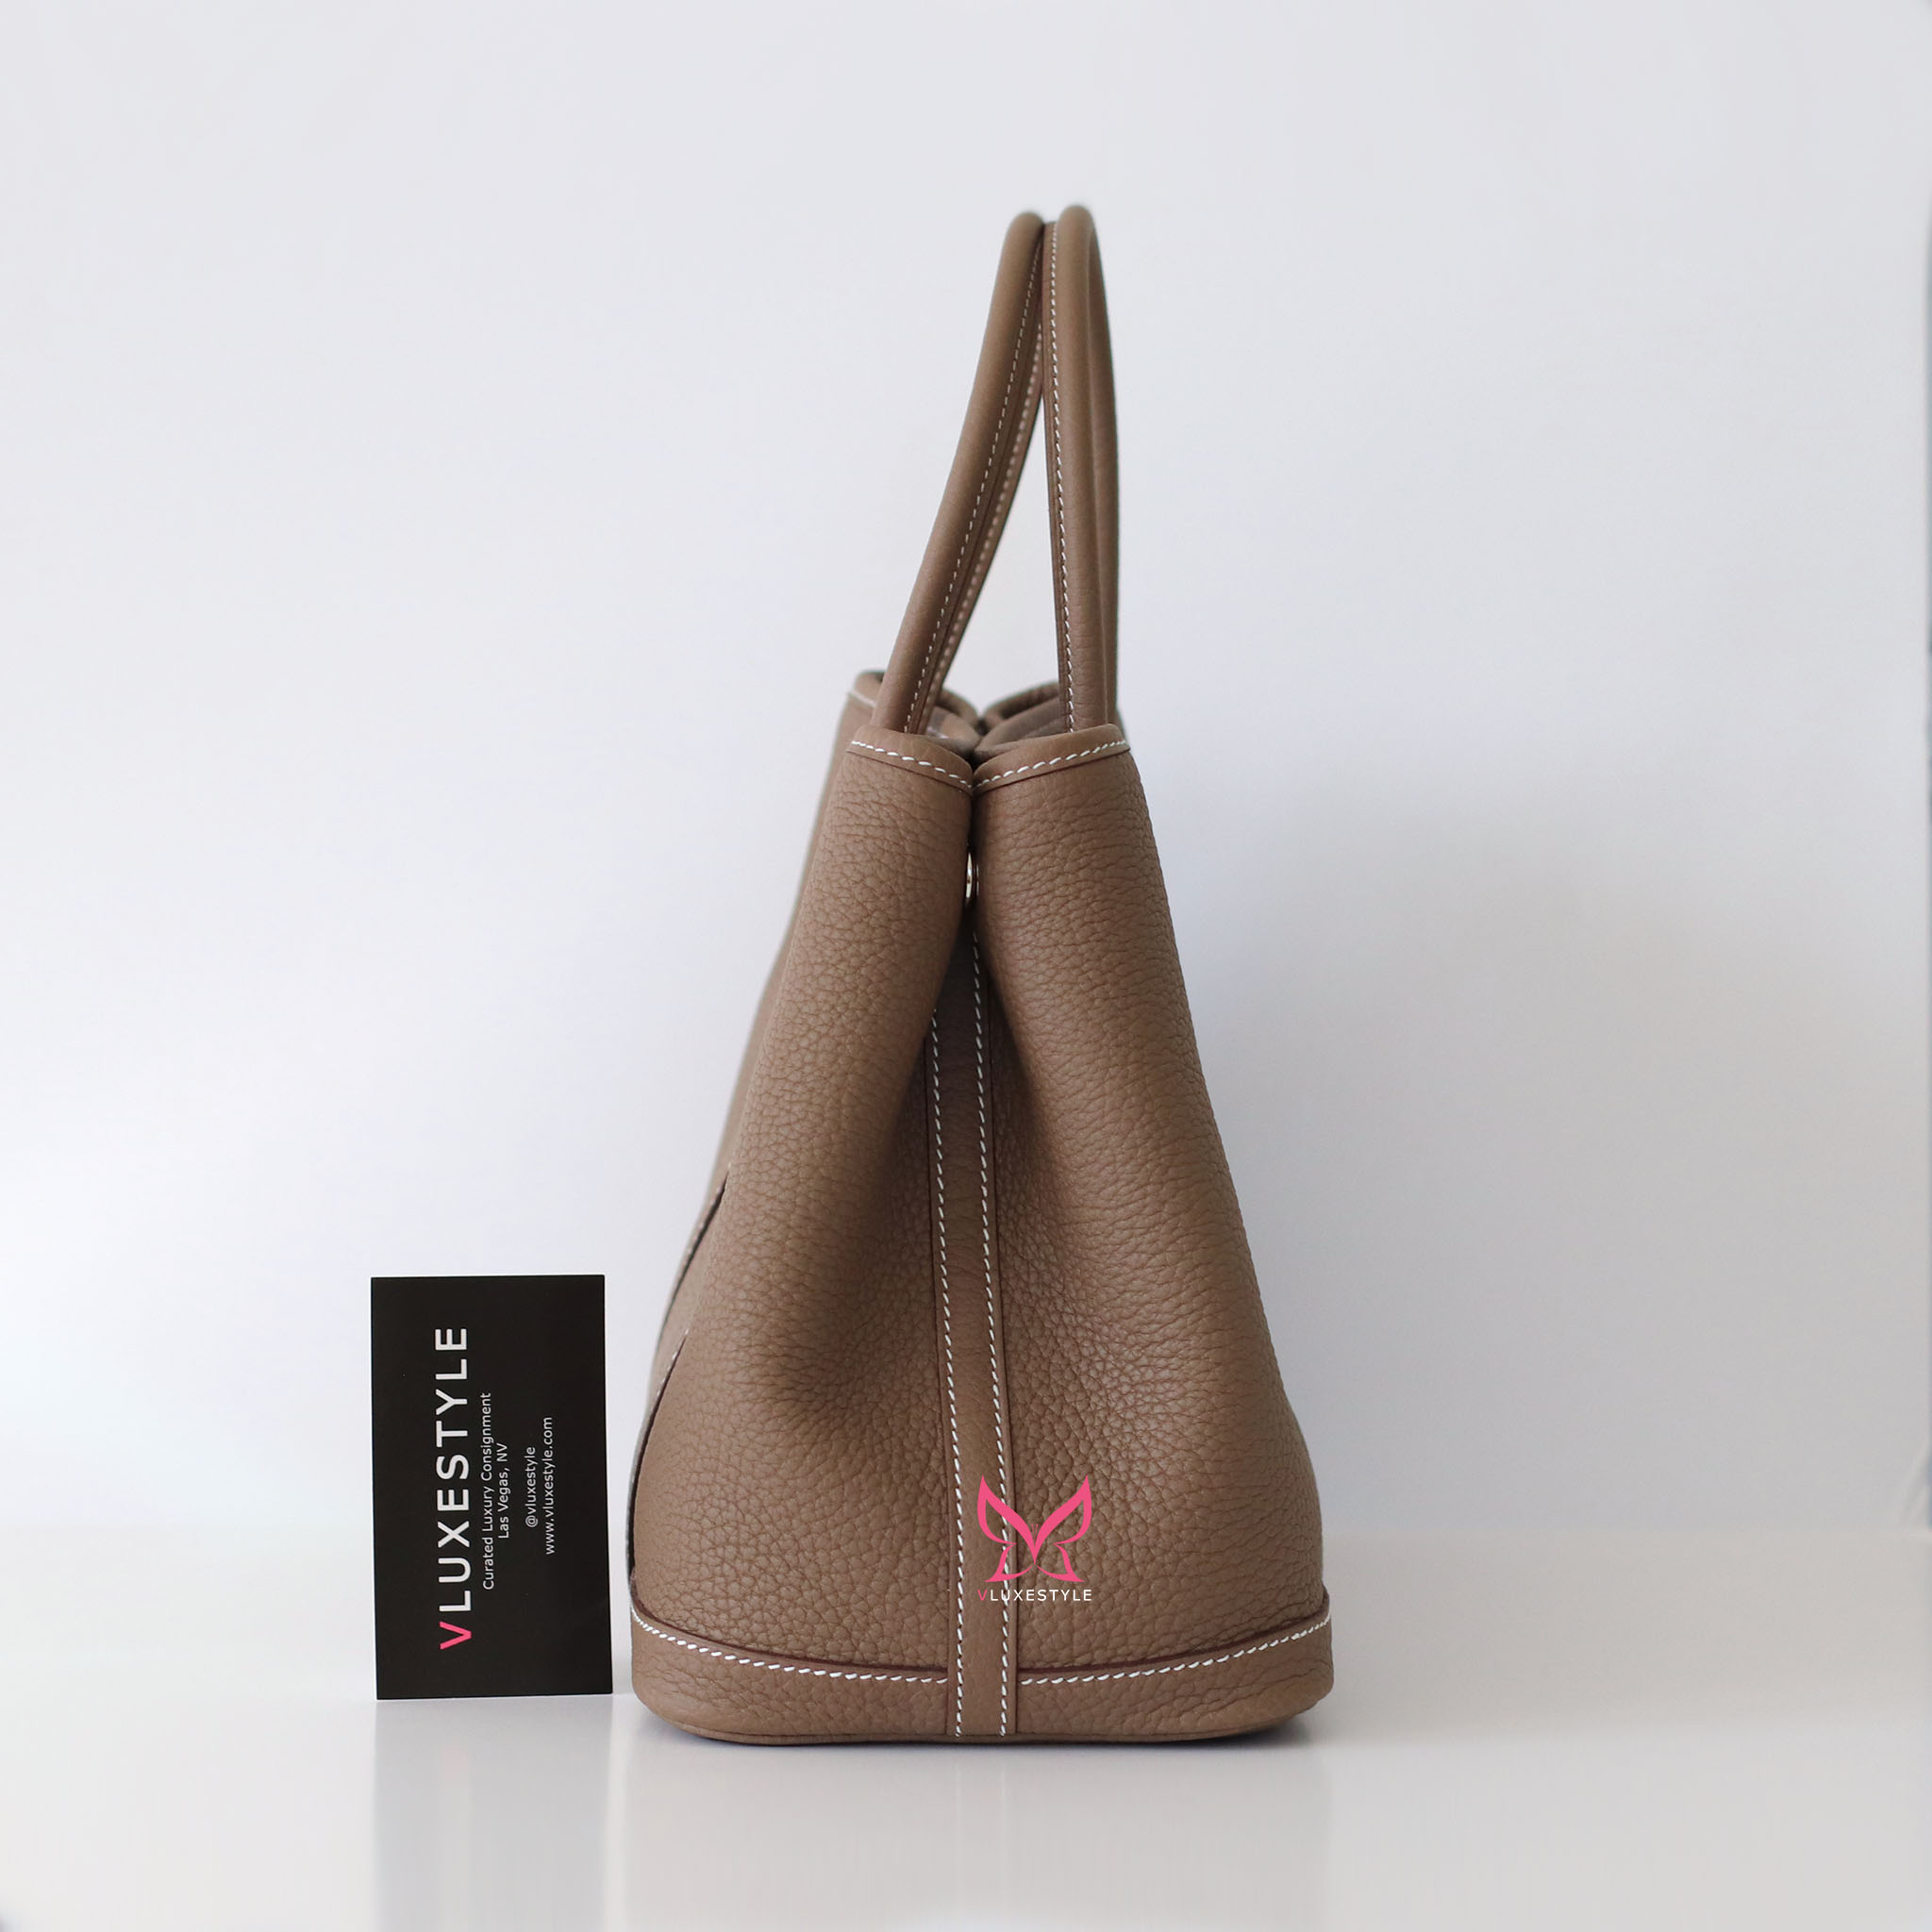 Hermes Garden Party Bag: Versatile Luxury